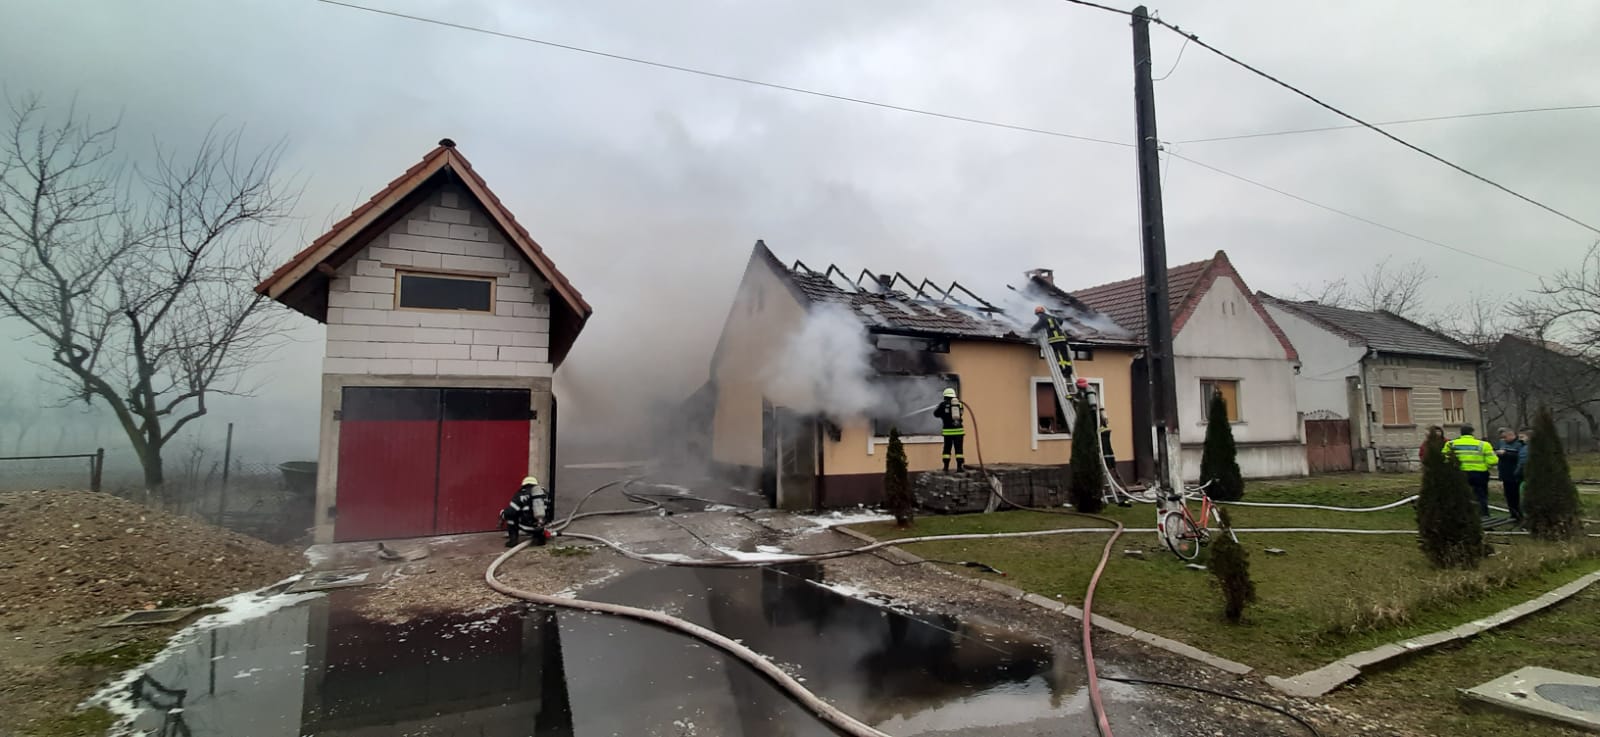 Casă distrusă în urma unui incendiu, în județul Timiș